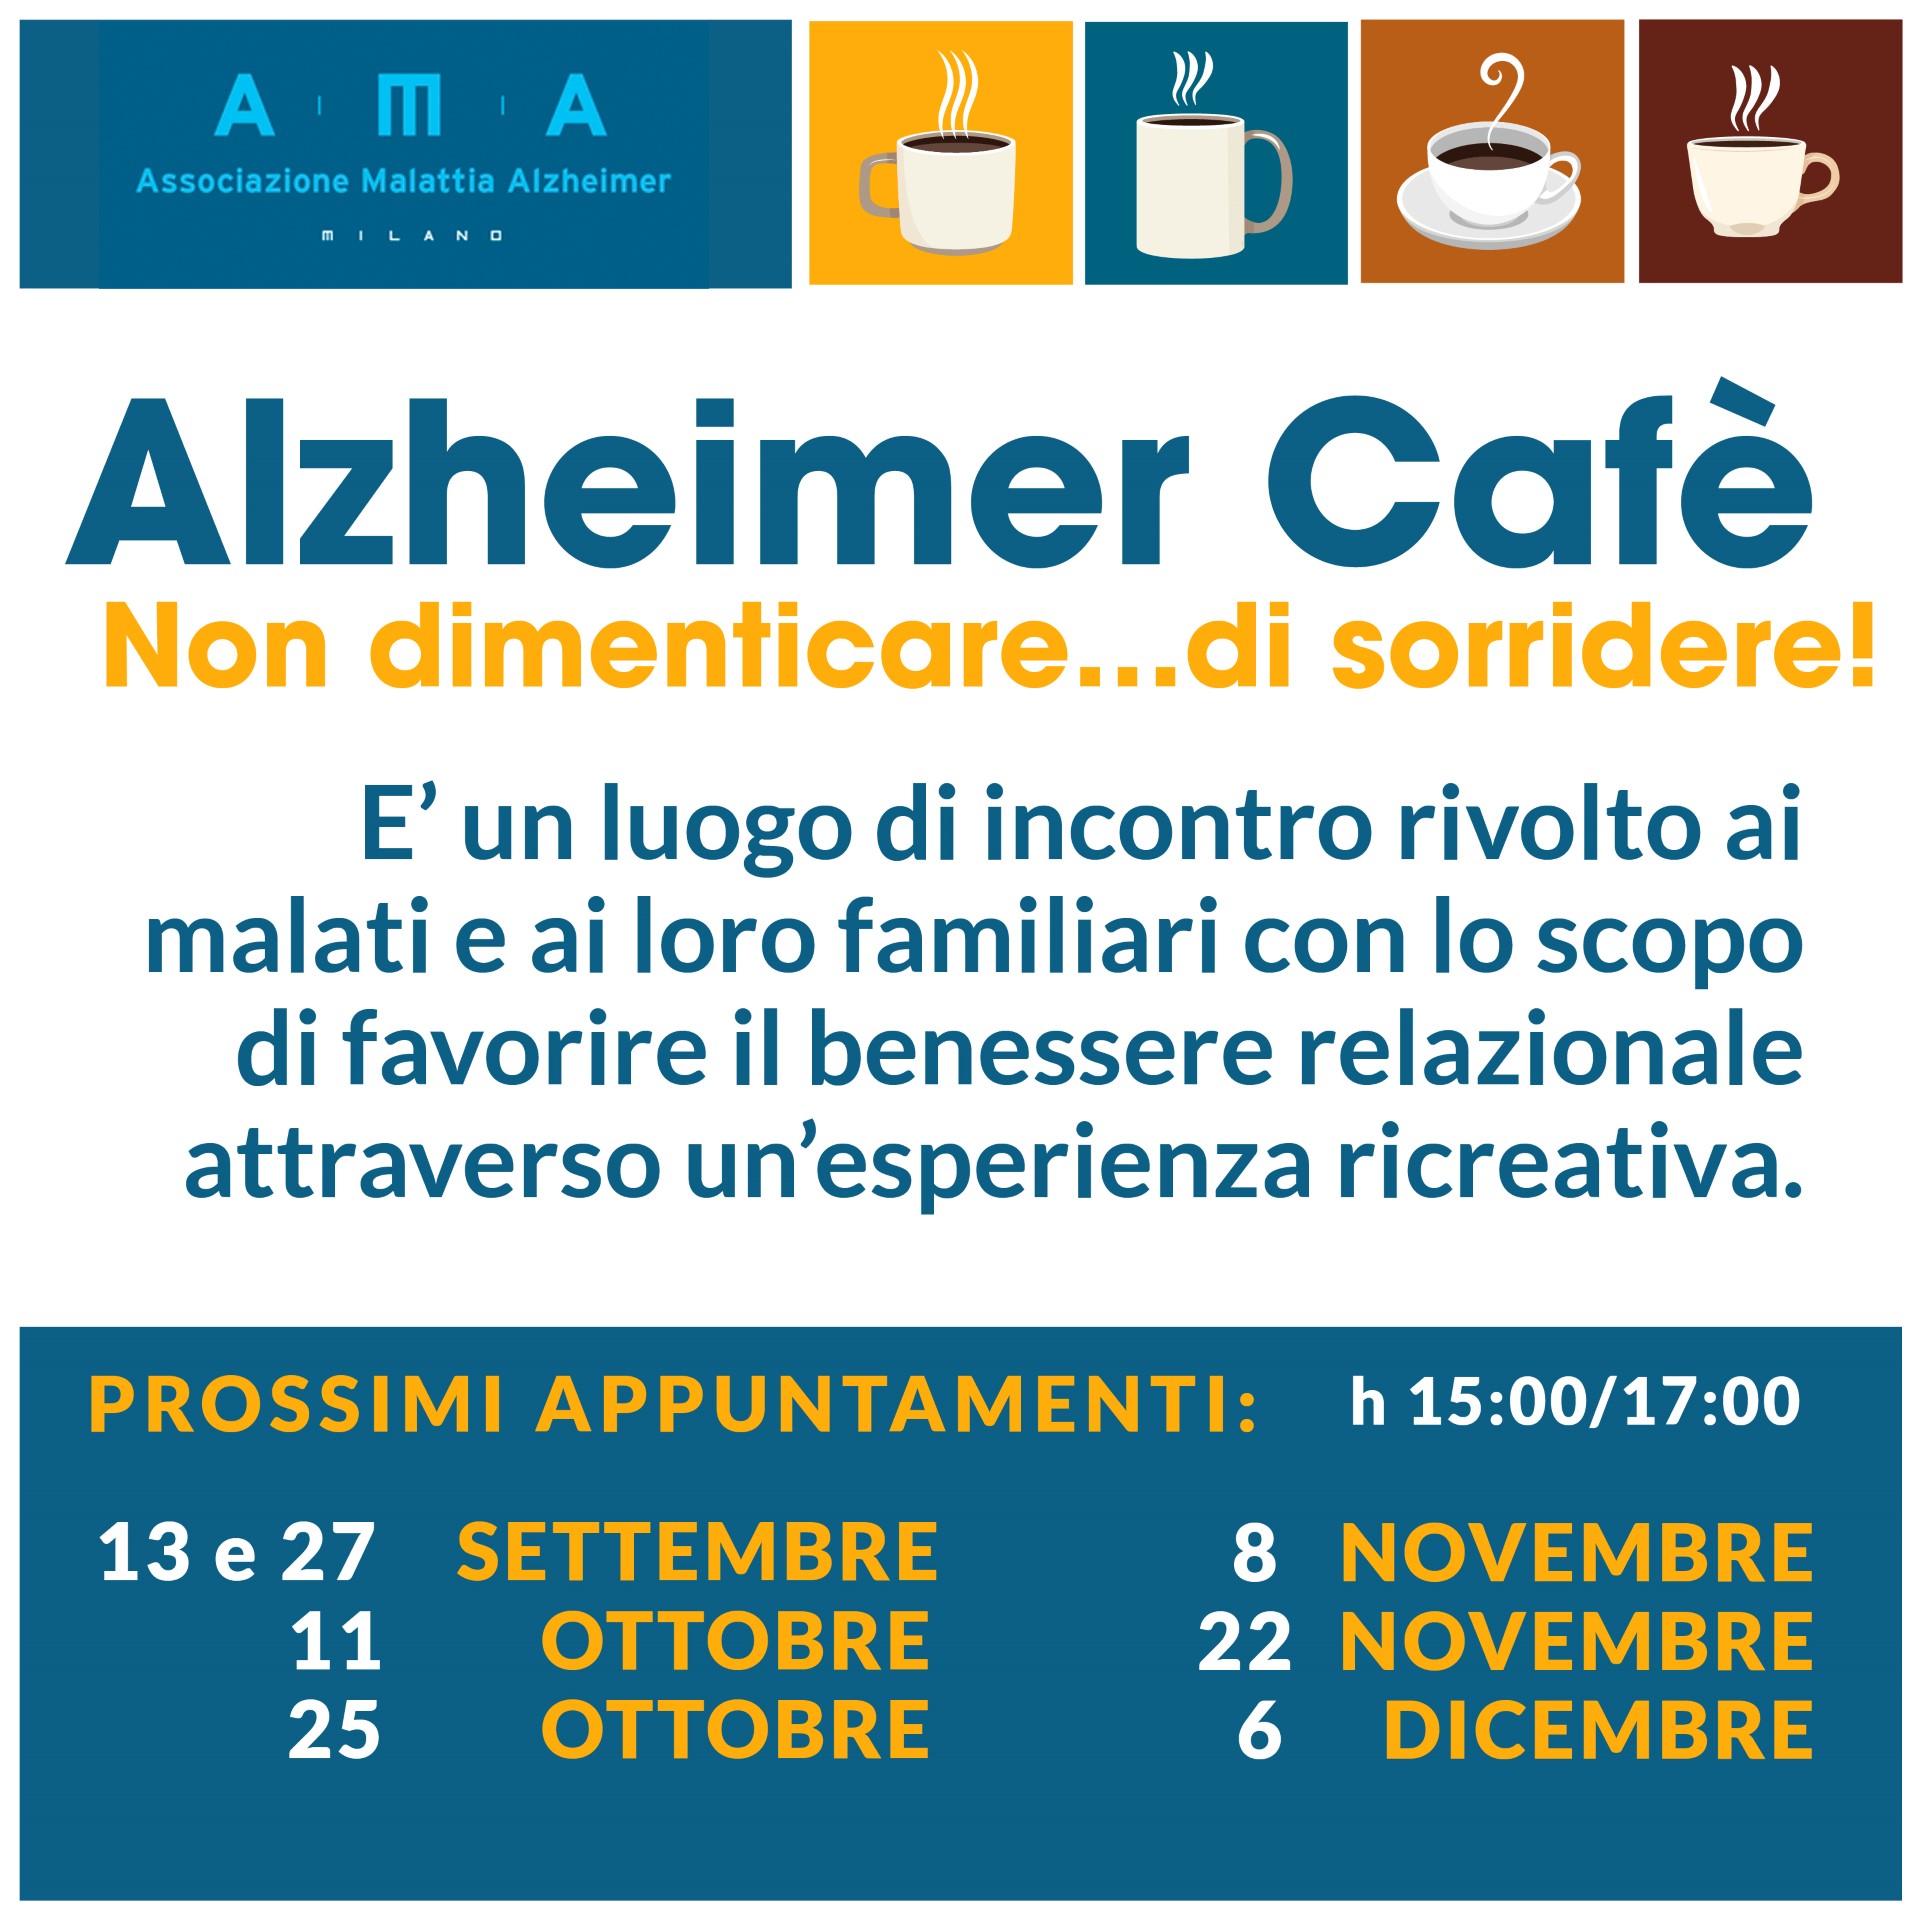 Riprendono gli appuntamenti con l'Alzheimer Cafè - Non dimenticare...di sorridere